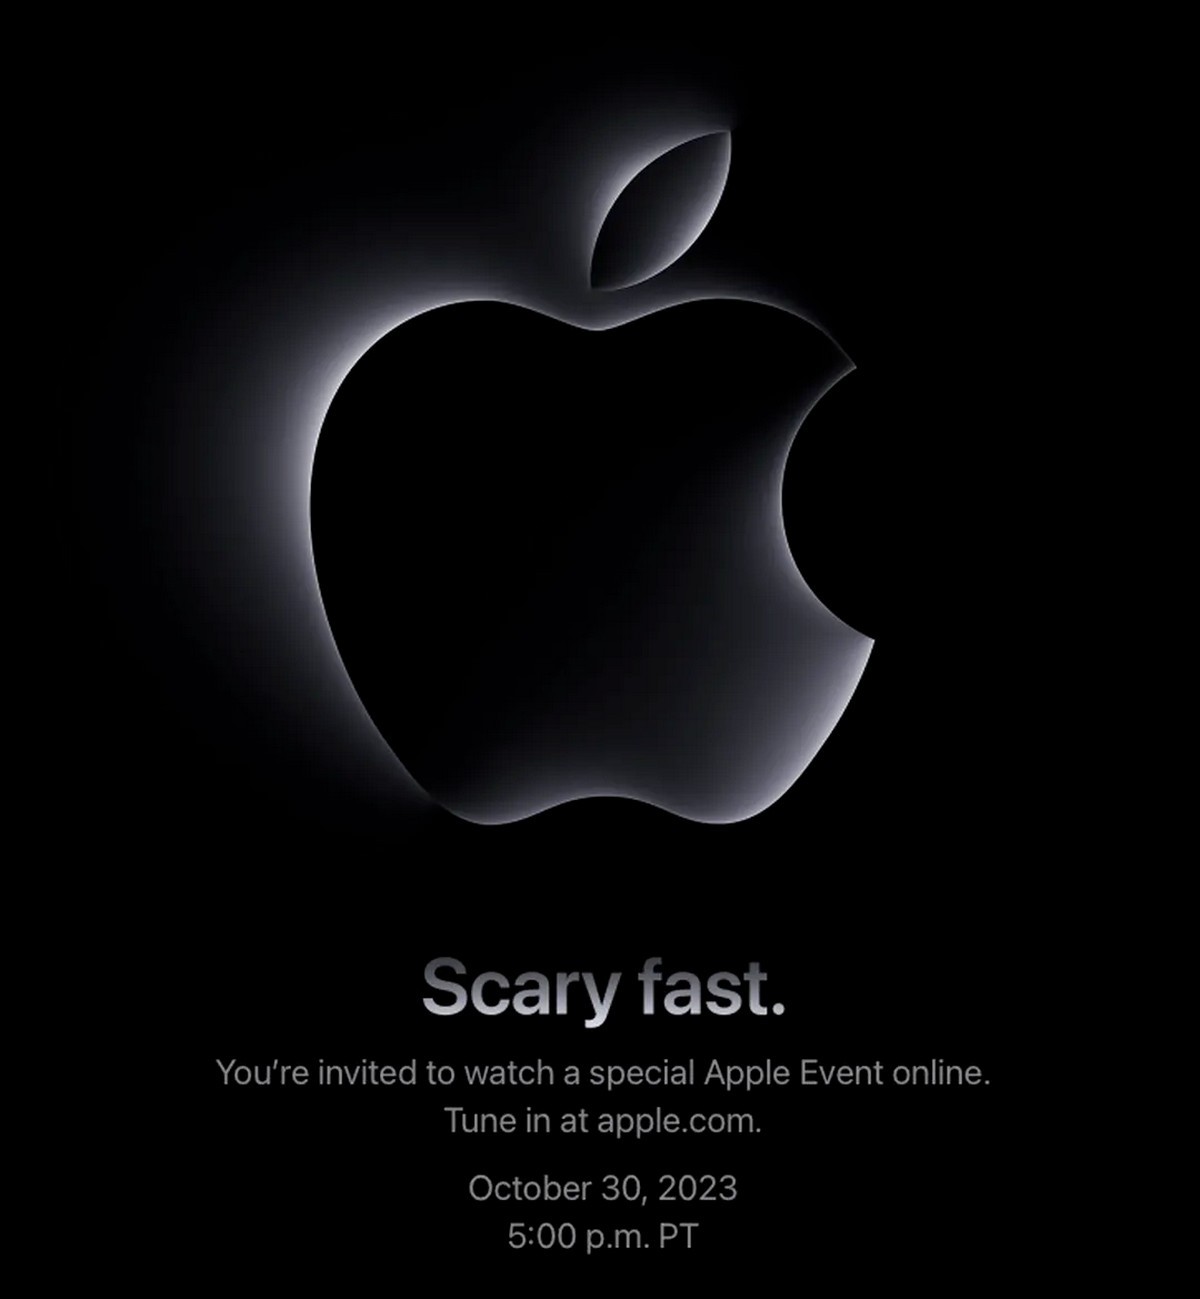 Η Apple ανακοινώνει το “Scary Fast” event για τα νέα Mac στα τέλη του μήνα